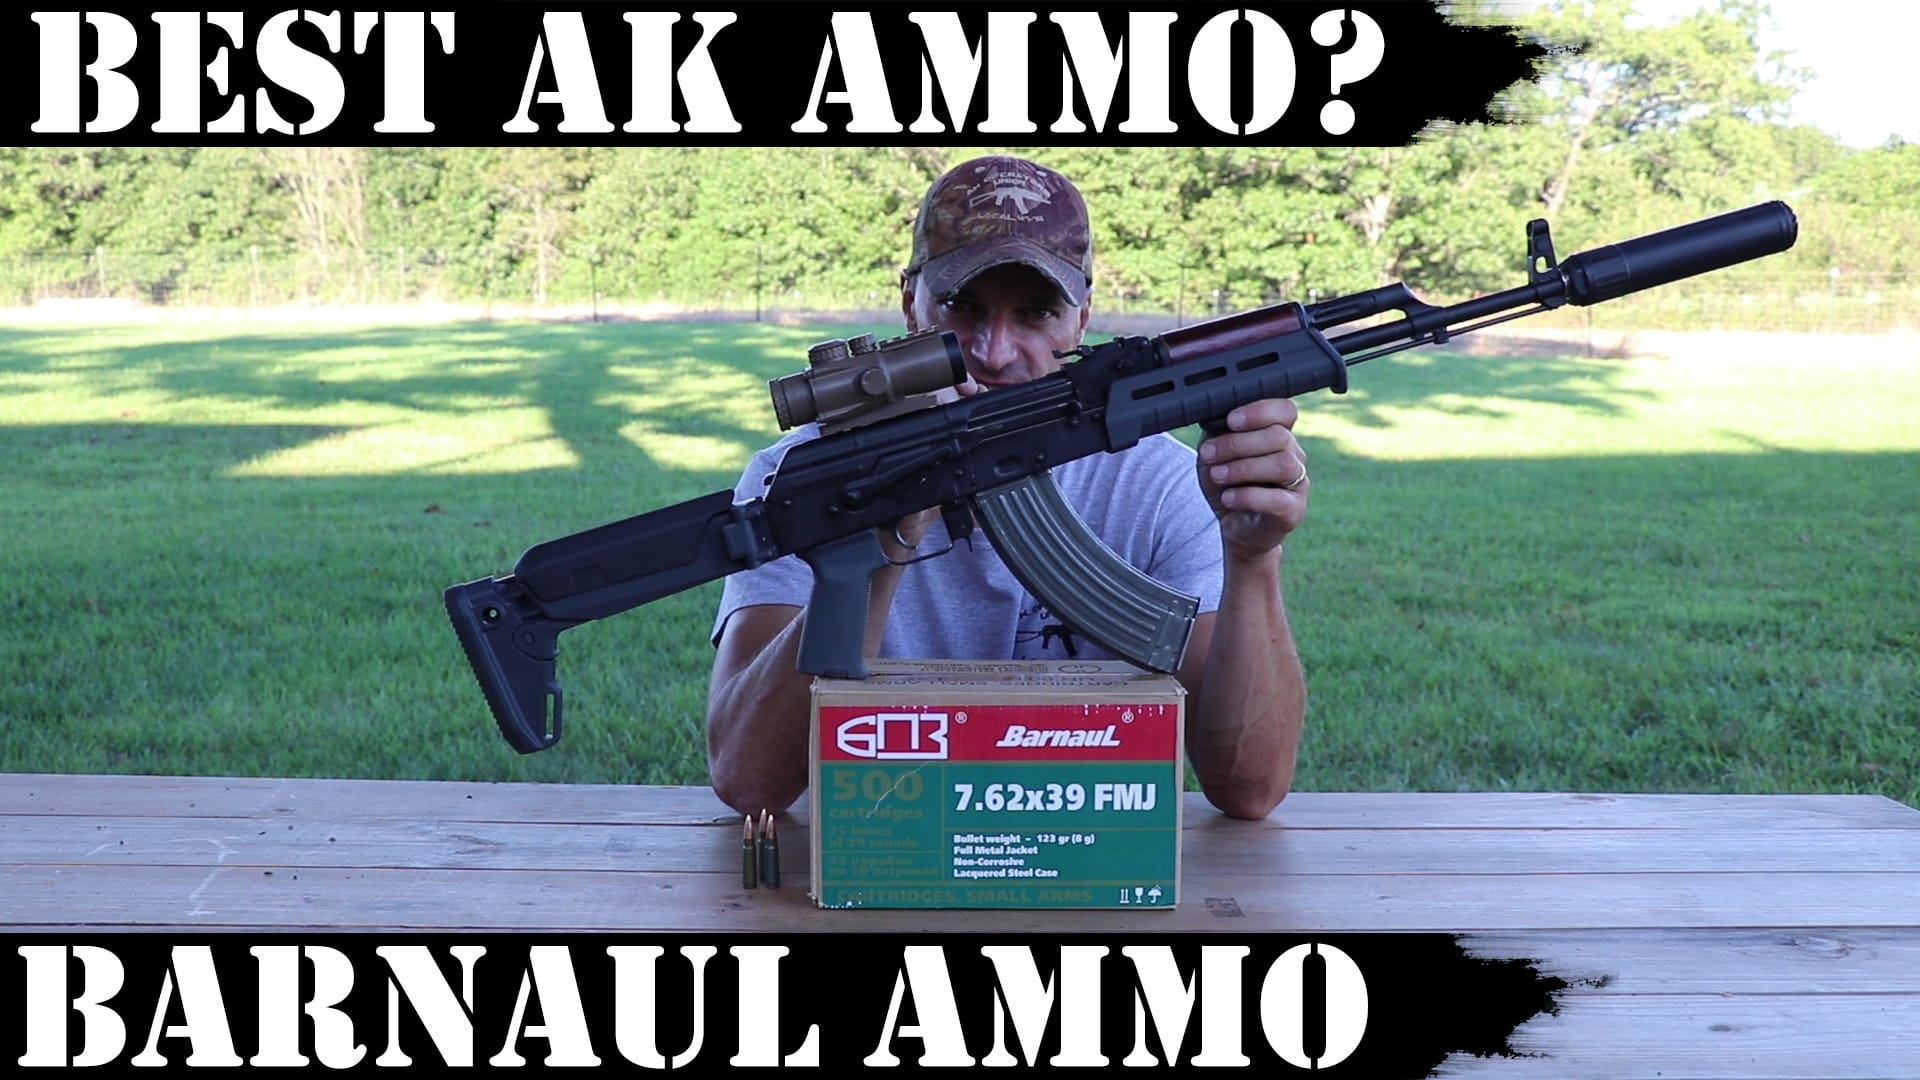 Best AK Ammo? Barnaul Ammo Rocks!